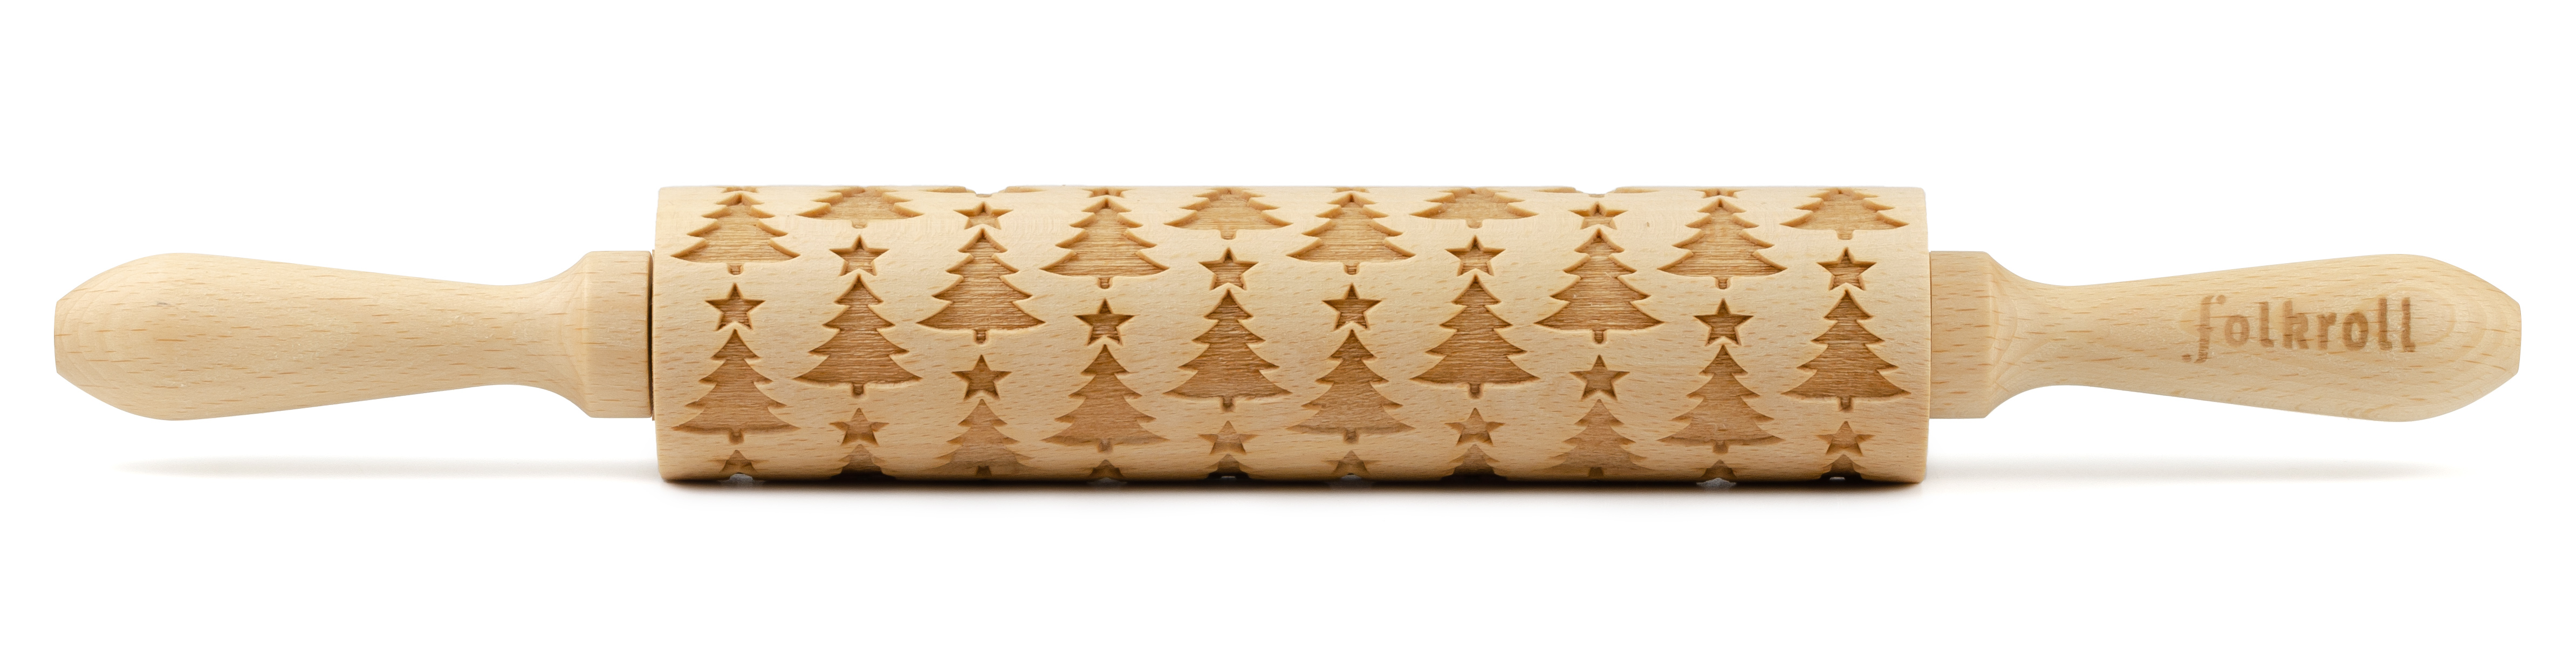 Roll of dough fir tree 37cm